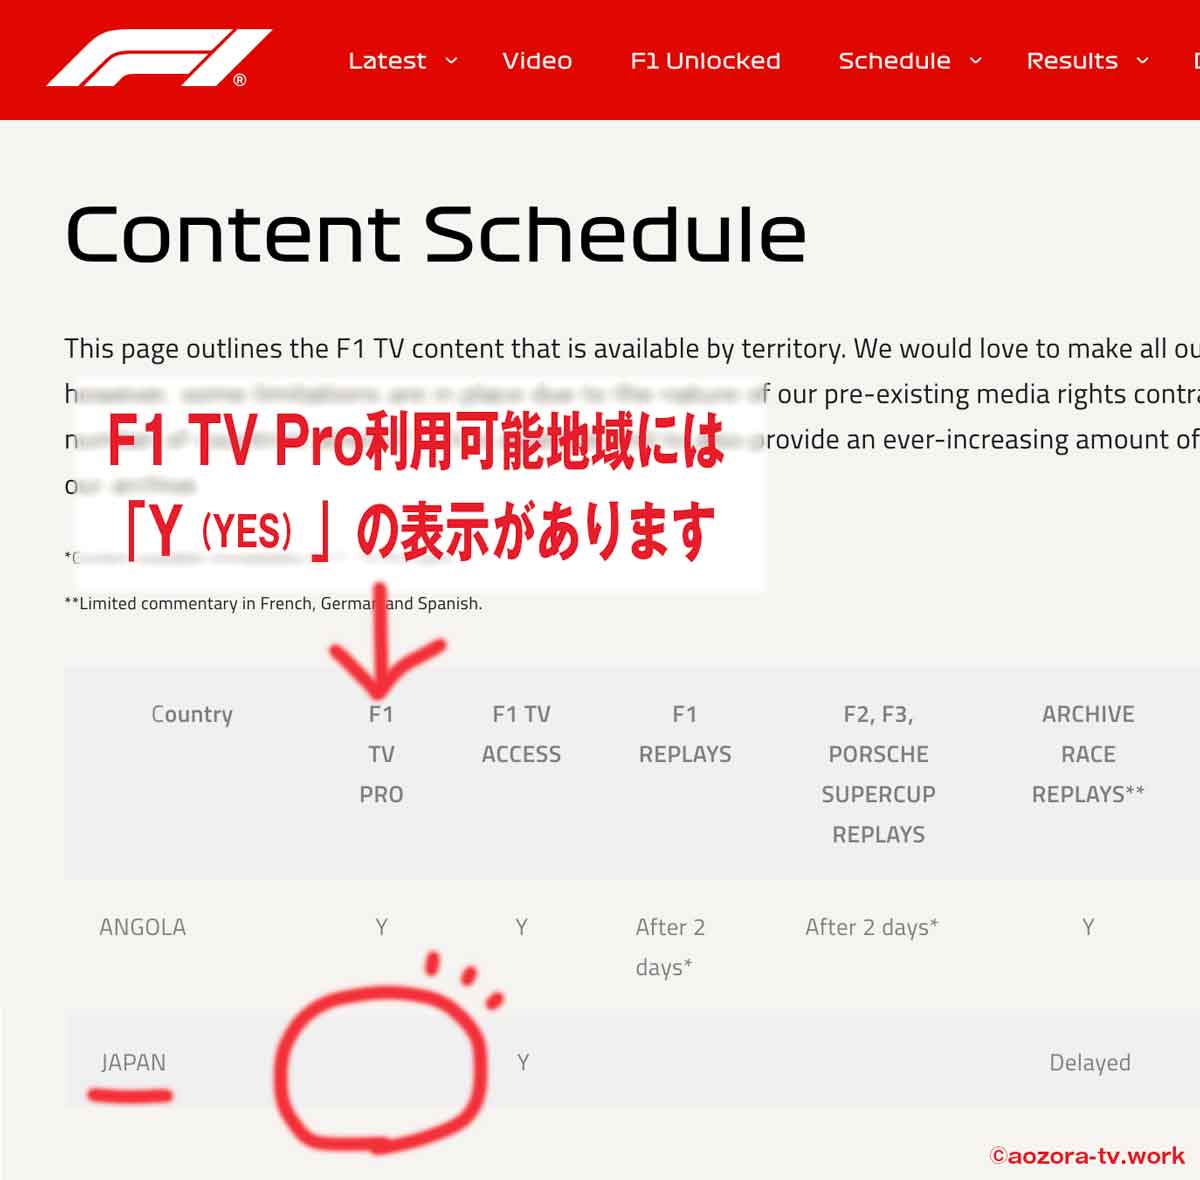 F1 TV Pro日本非対応